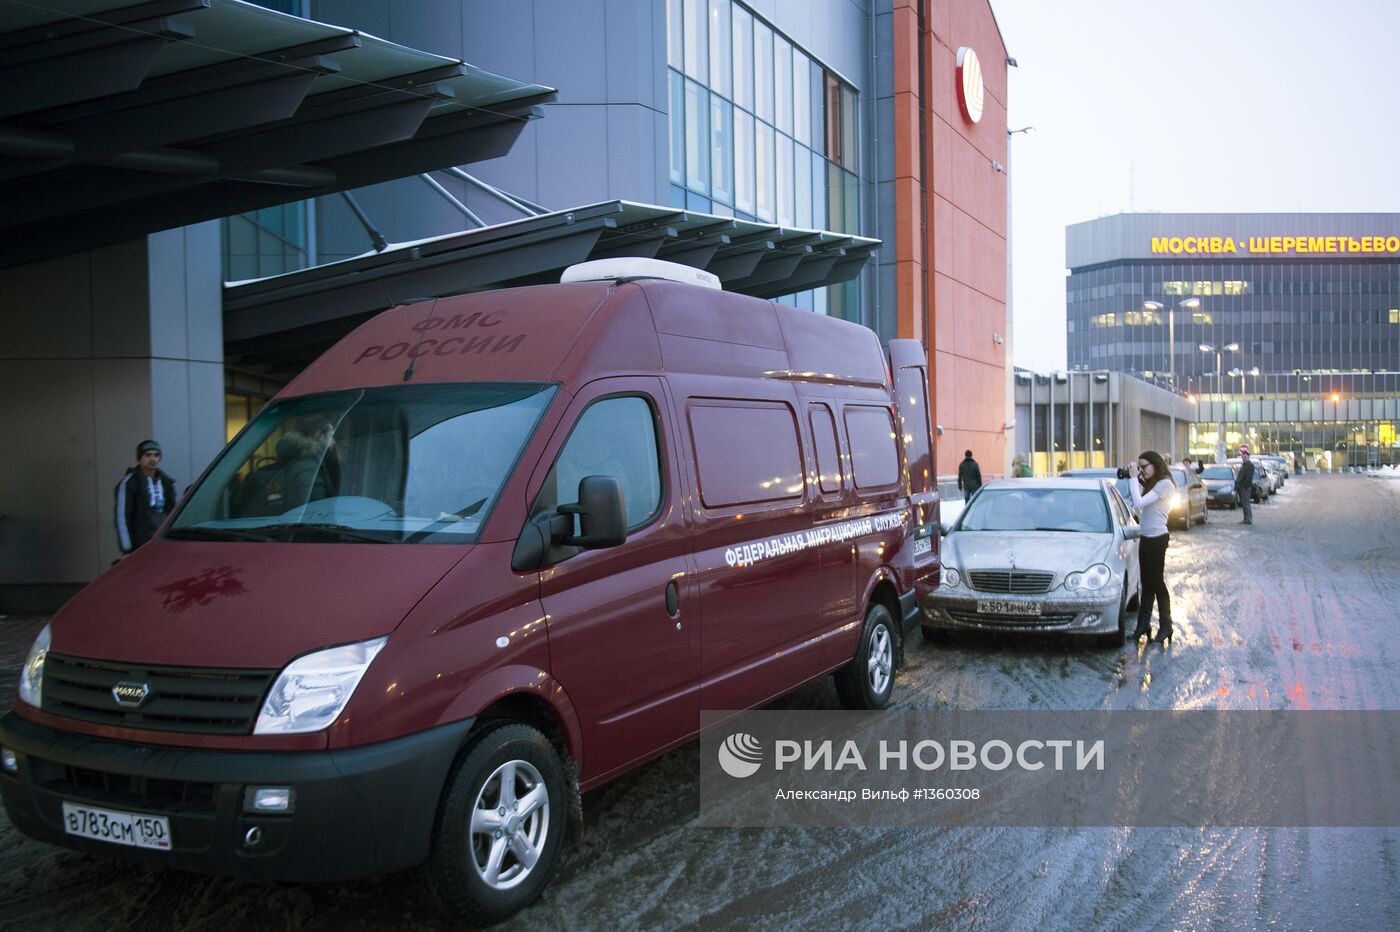 Проверка документов сотрудниками ФМС в аэропорту Шереметьево